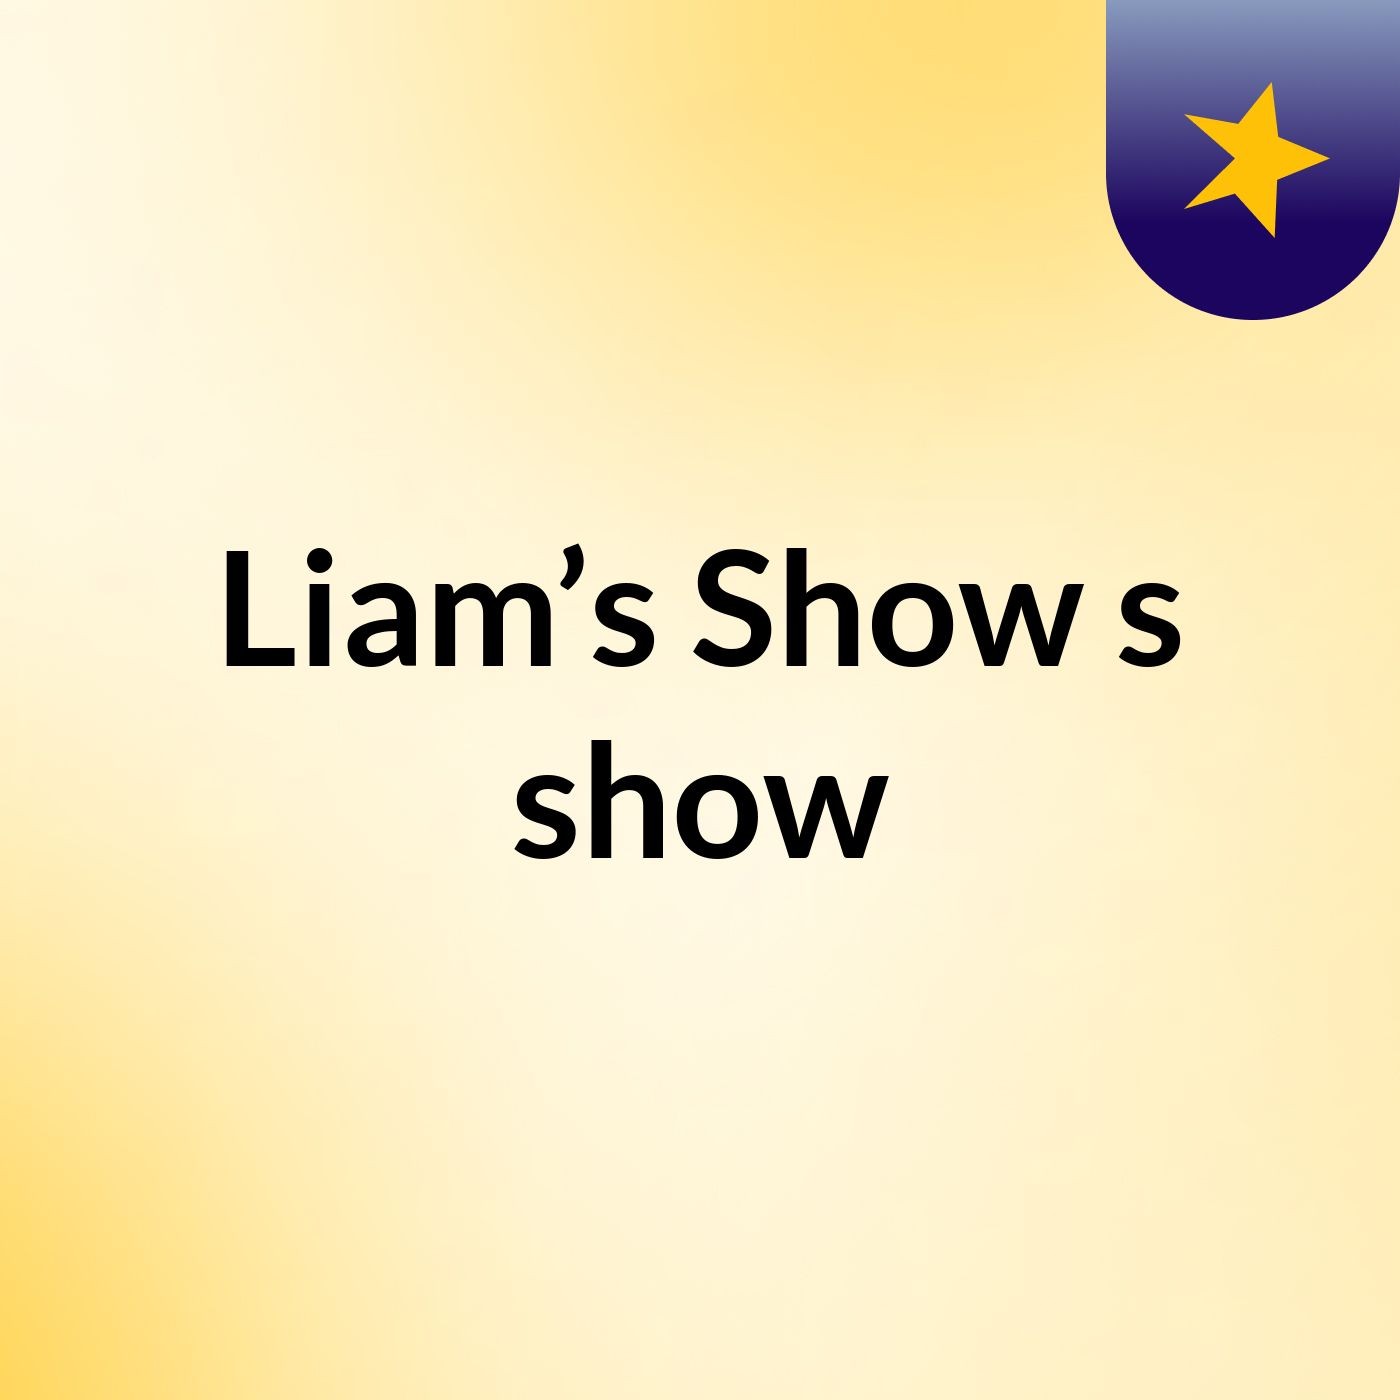 Liam’s Show's show